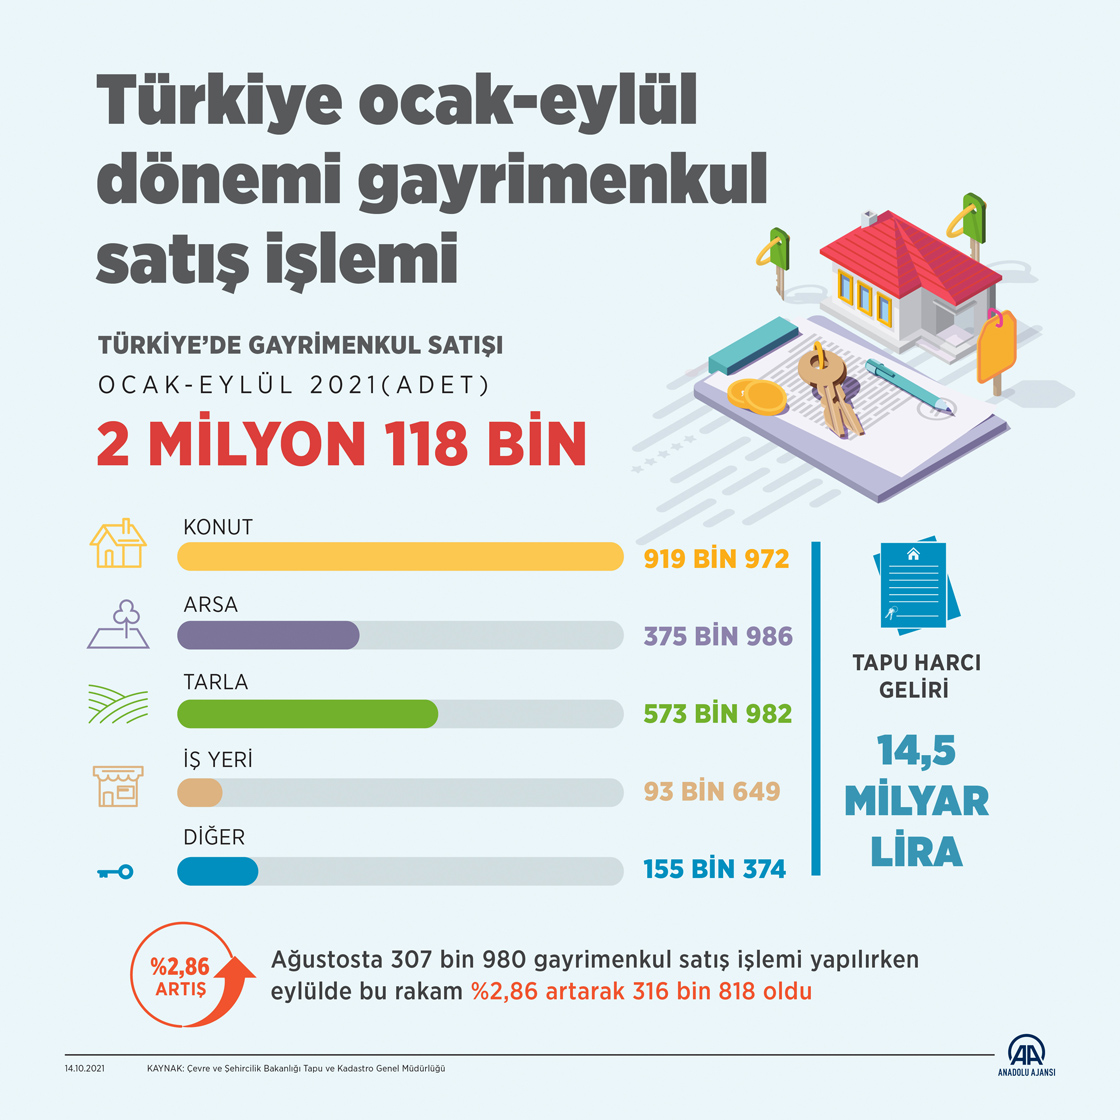 Türkiye'de 9 ayda 2 milyon 118 bin gayrimenkul satıldı